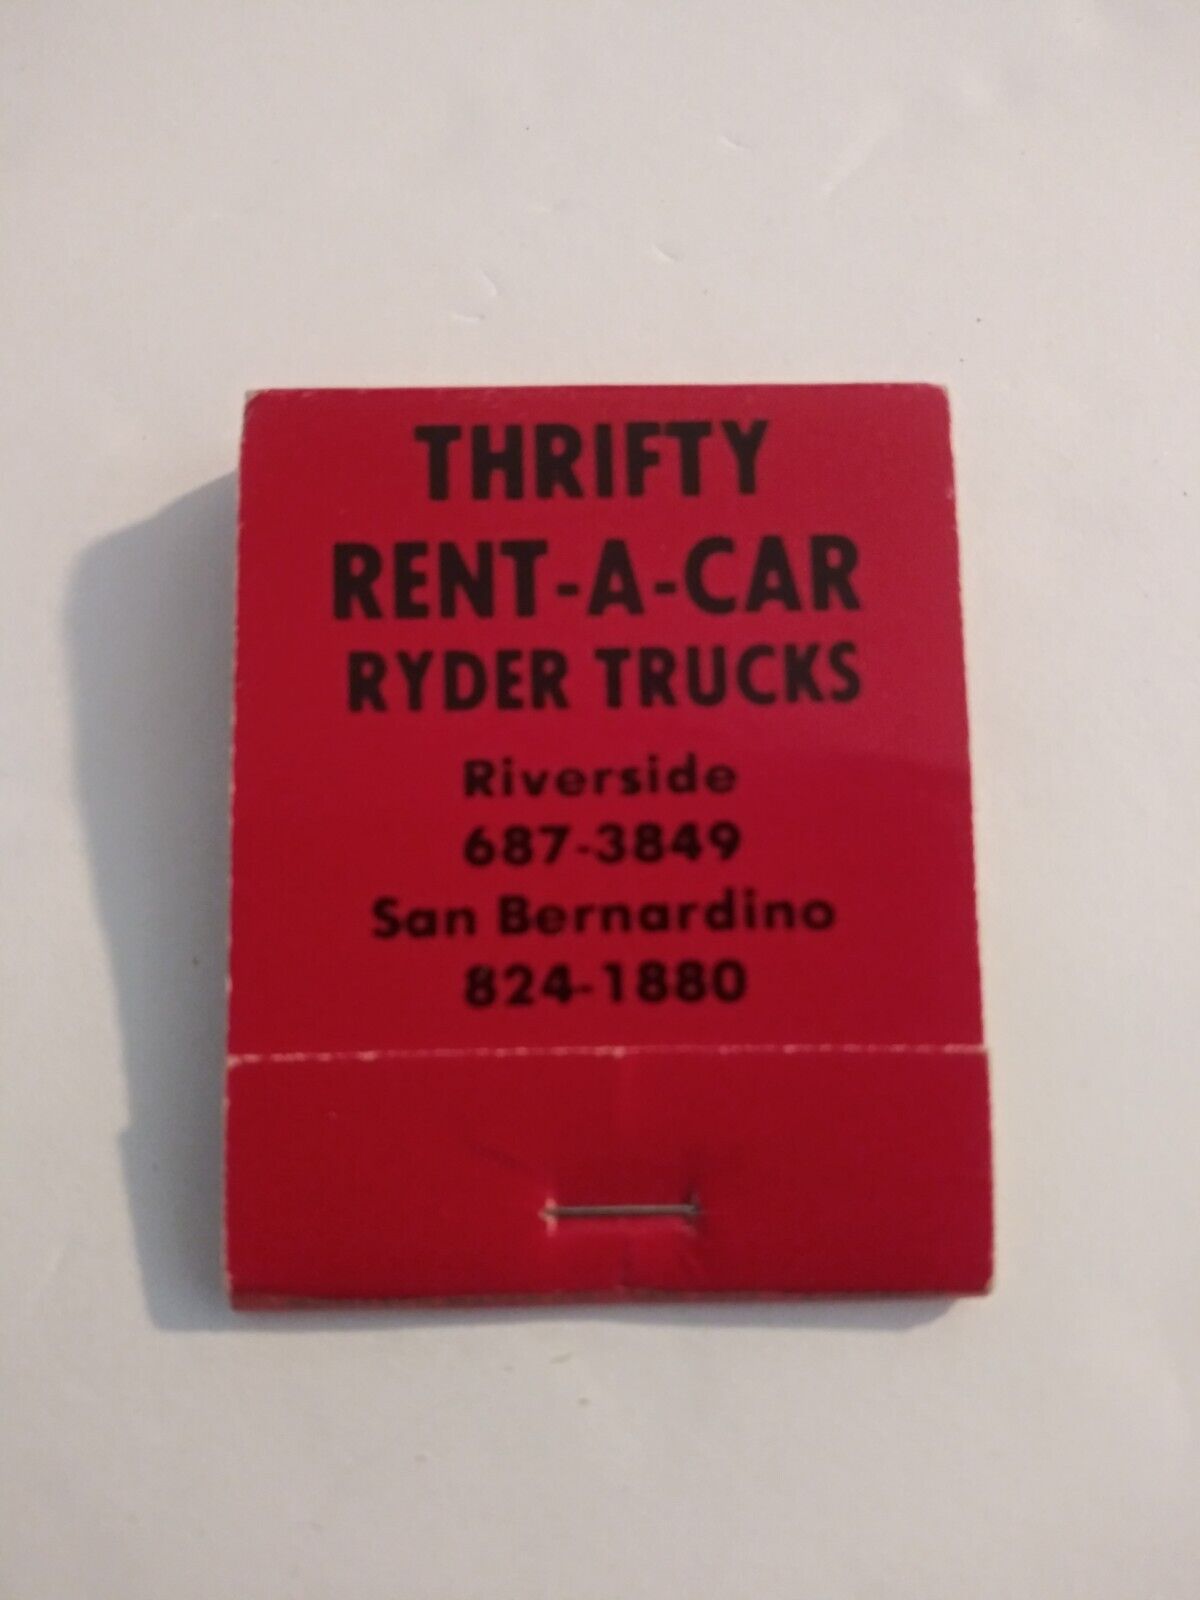 Vintage Matches From Thrifty Rent-A-Car Ryder Trucks San Bernardino California